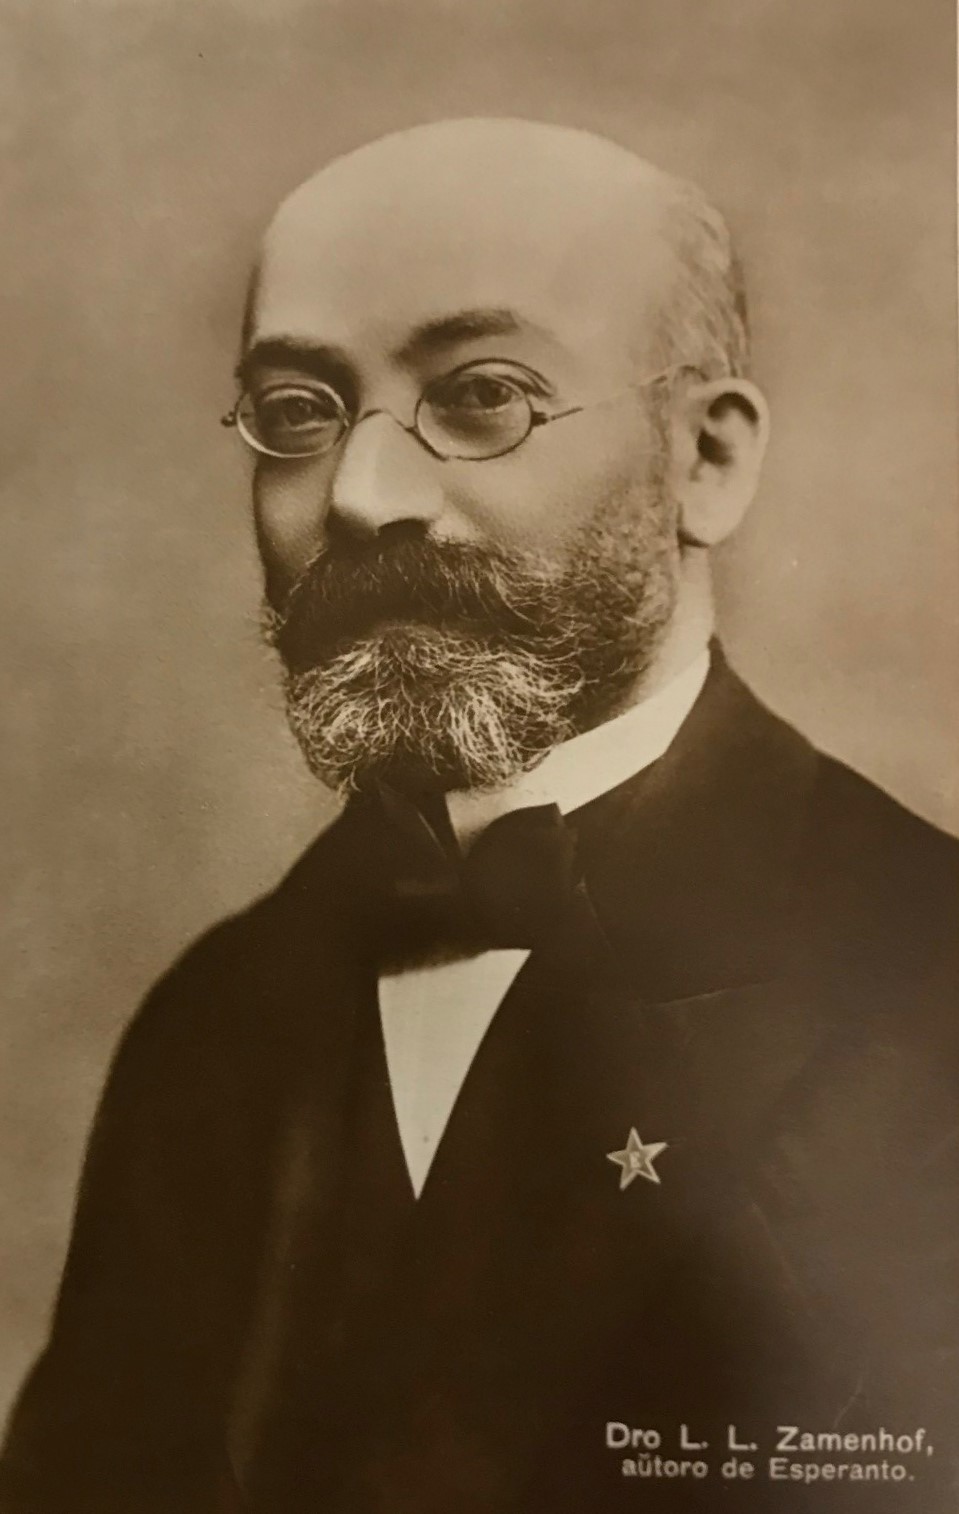 Porträtt av en skallig man med gråsprängt helskägg och ovala glasögon. På kavajslaget bär han en stjärna, en symbol för esperantospråket.